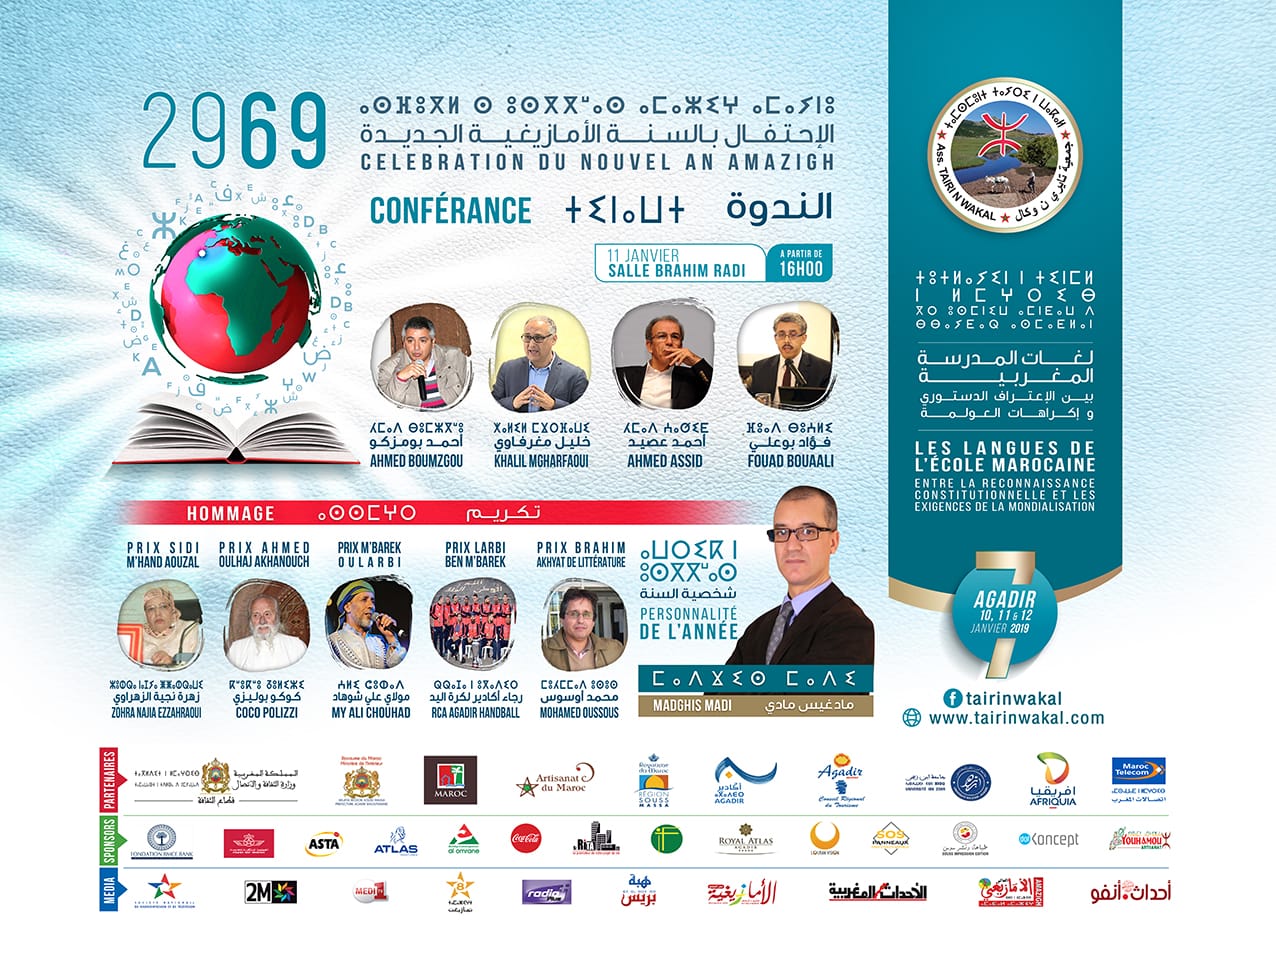 تايري ن واكال تحتفل برأس السنة الأمازيغية 2969 وتناقش لغات المدرسة المغربية  